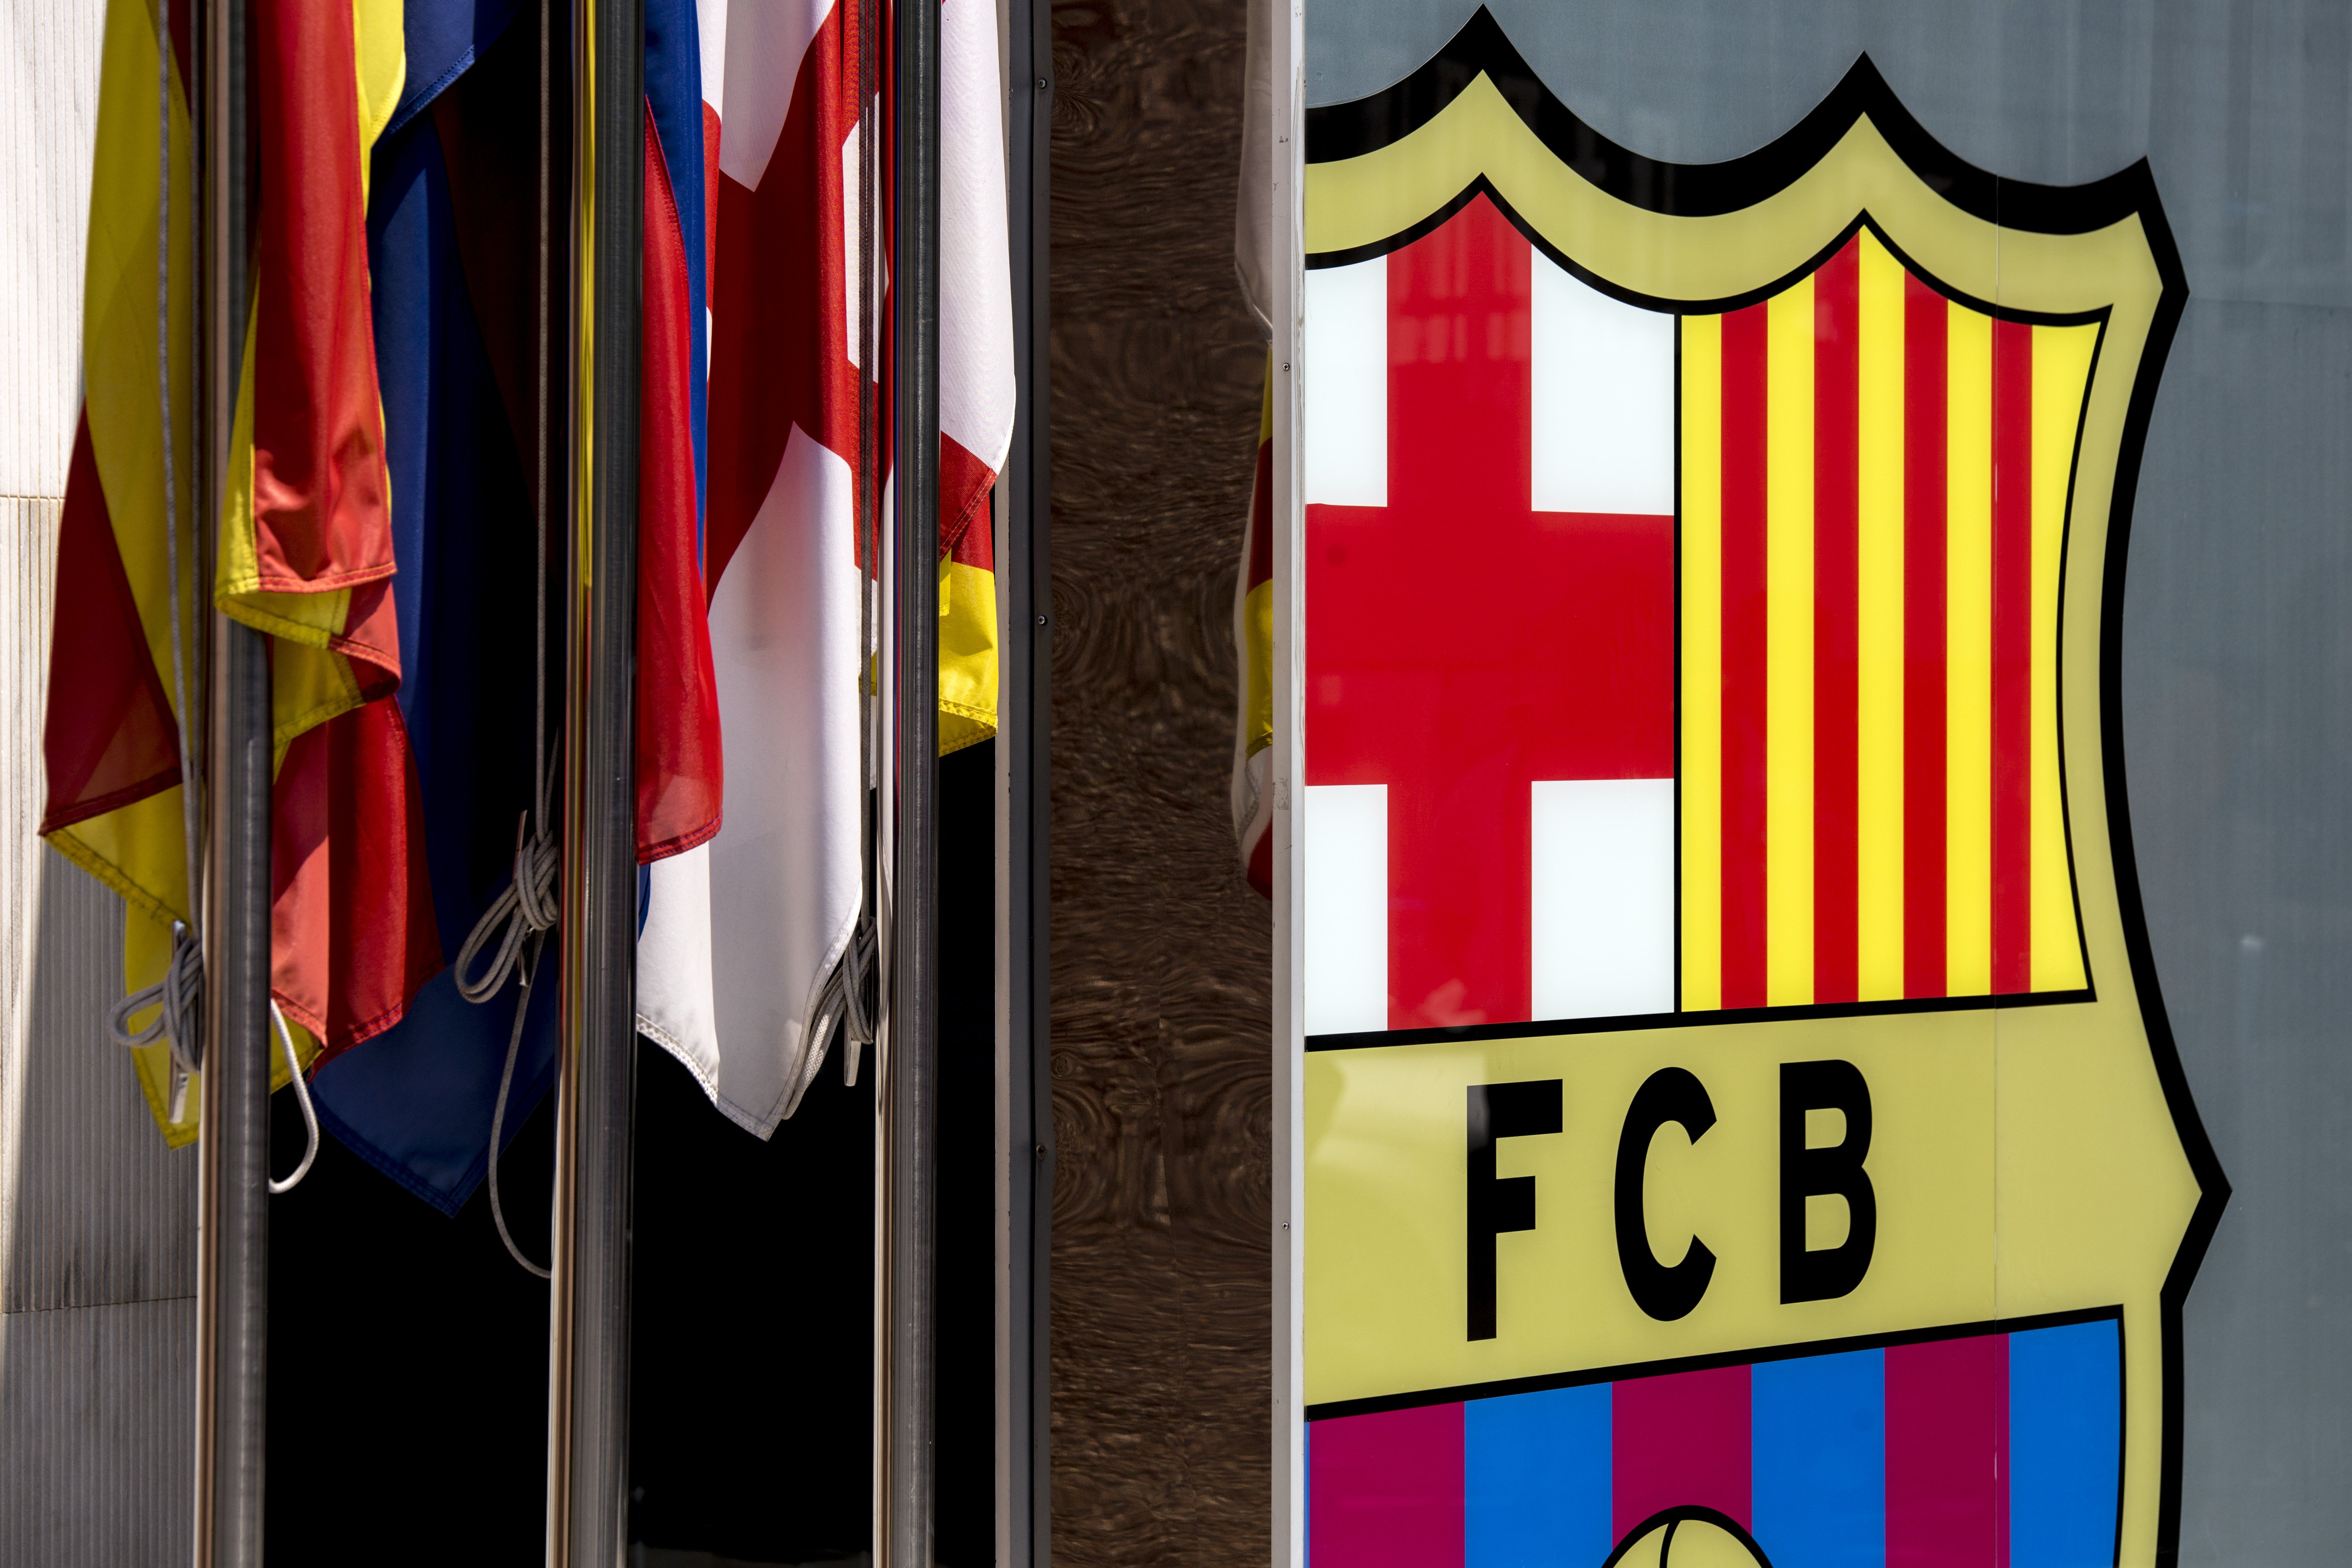 El Barça admet errors amb el cas I3 Ventures, però descarta la corrupció